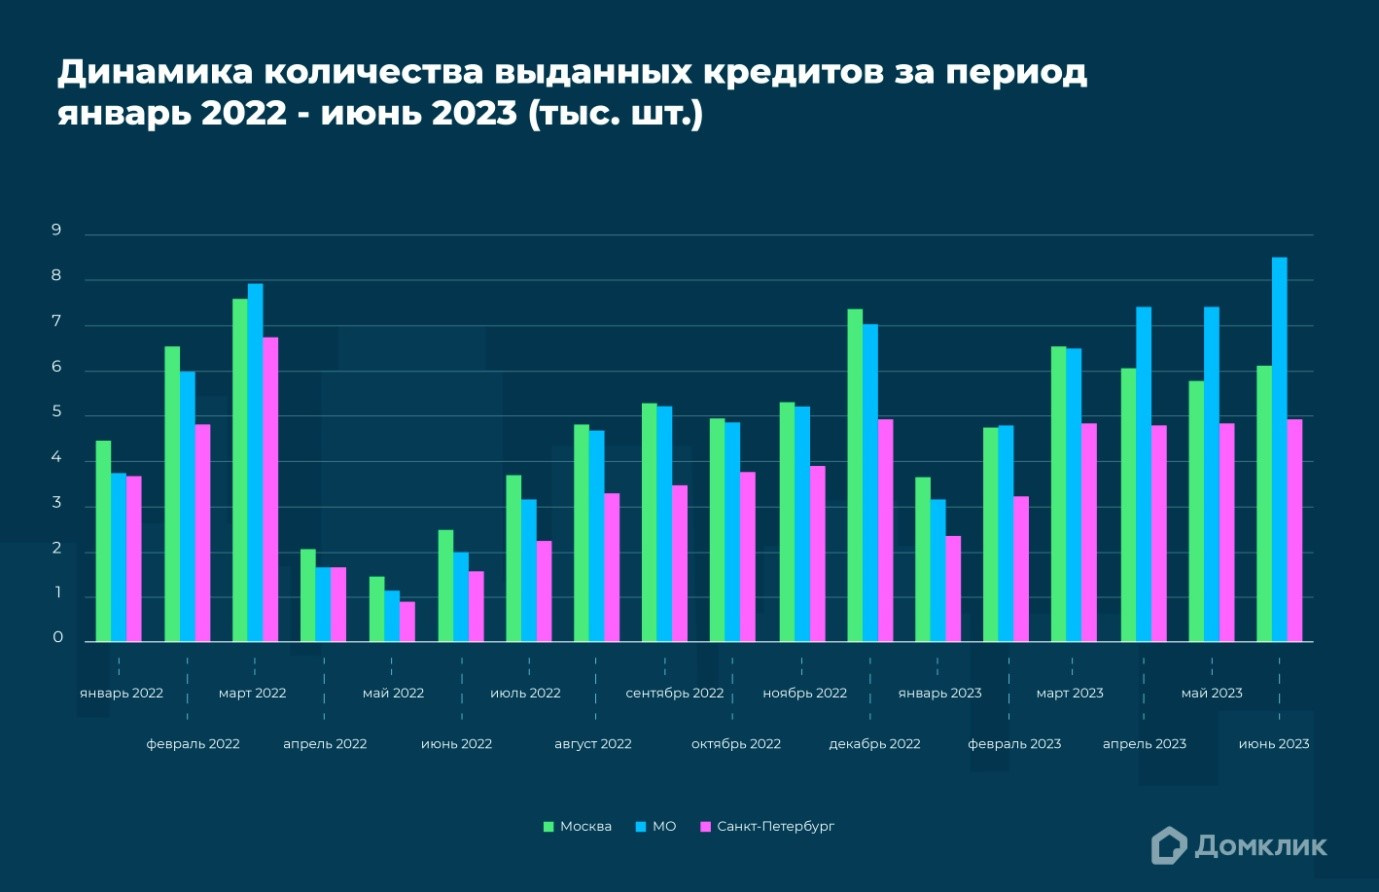 Динамика количества выдач ипотечных кредитов за 2022–2023 годы по крупнейшим регионам РФ: Москве, Московской области, Санкт-Петербургу